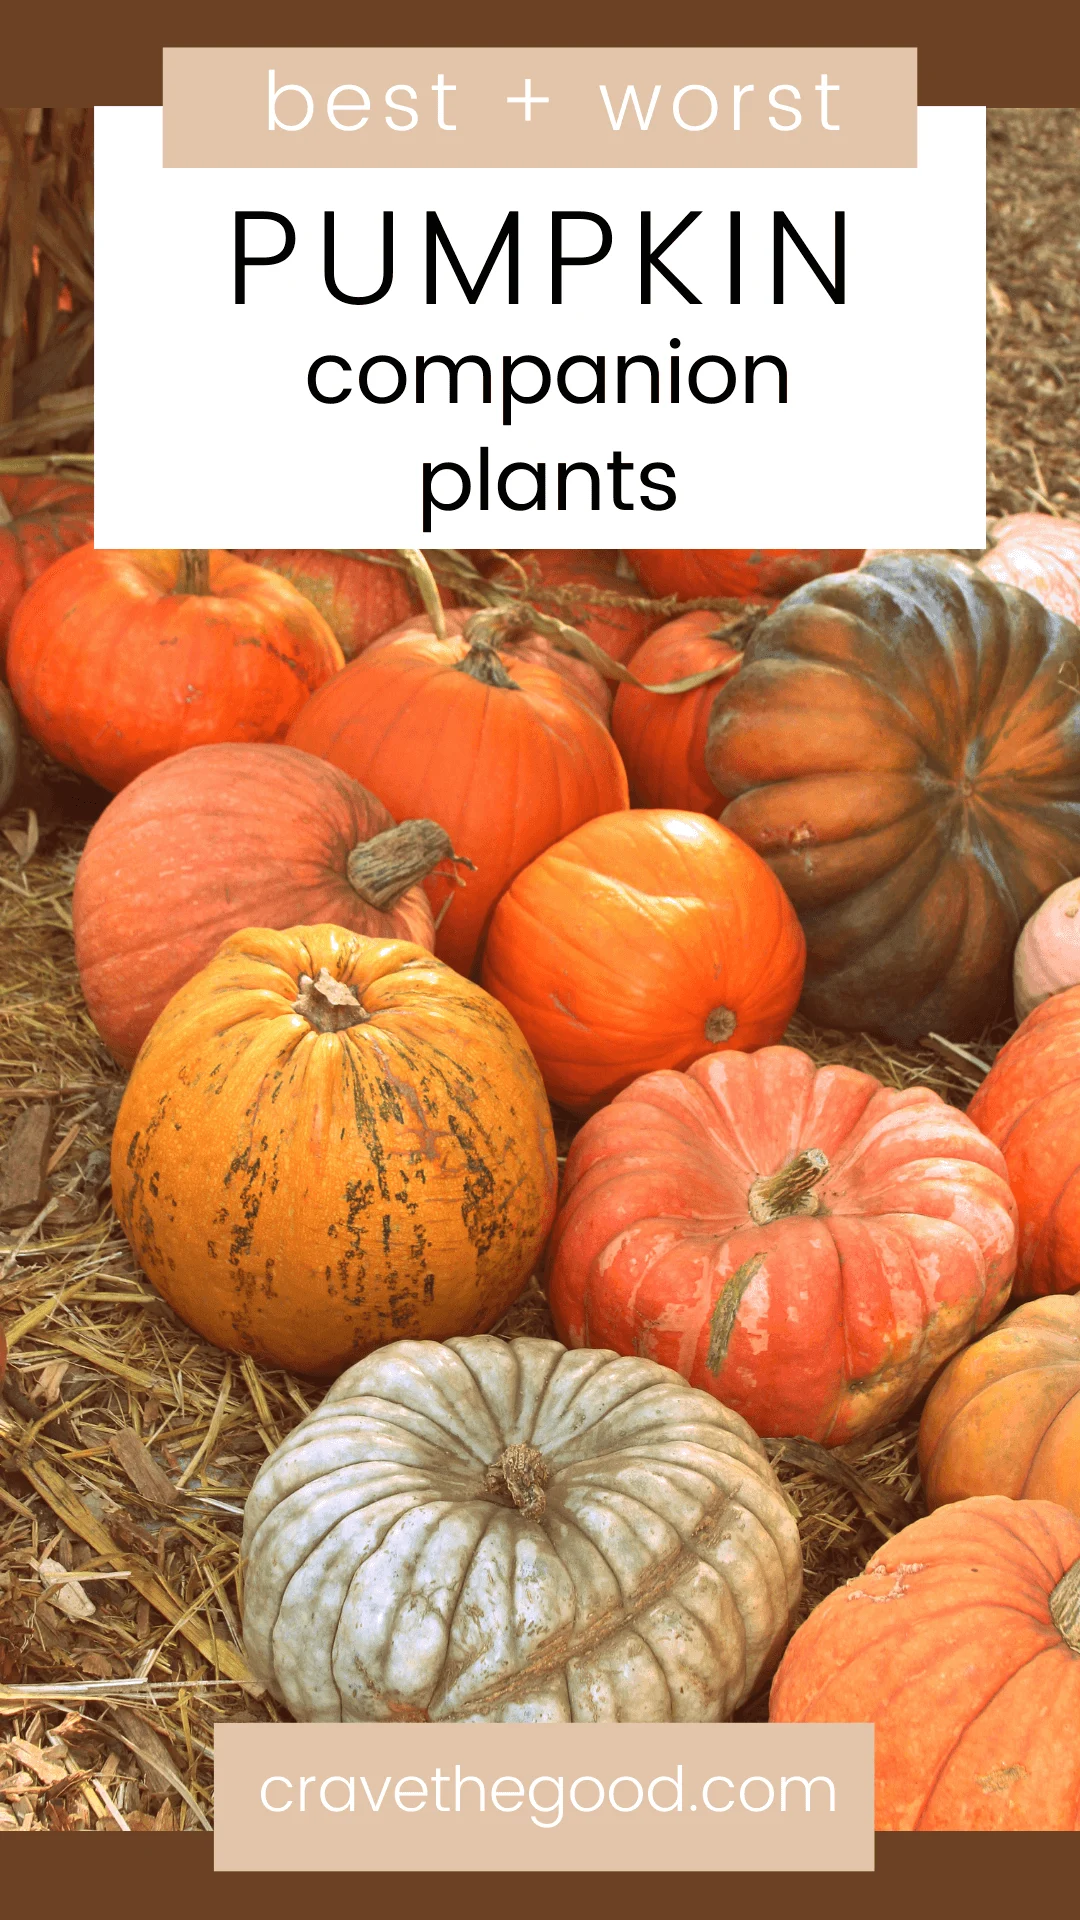 Pumpkin companion plants pinterest graphic.